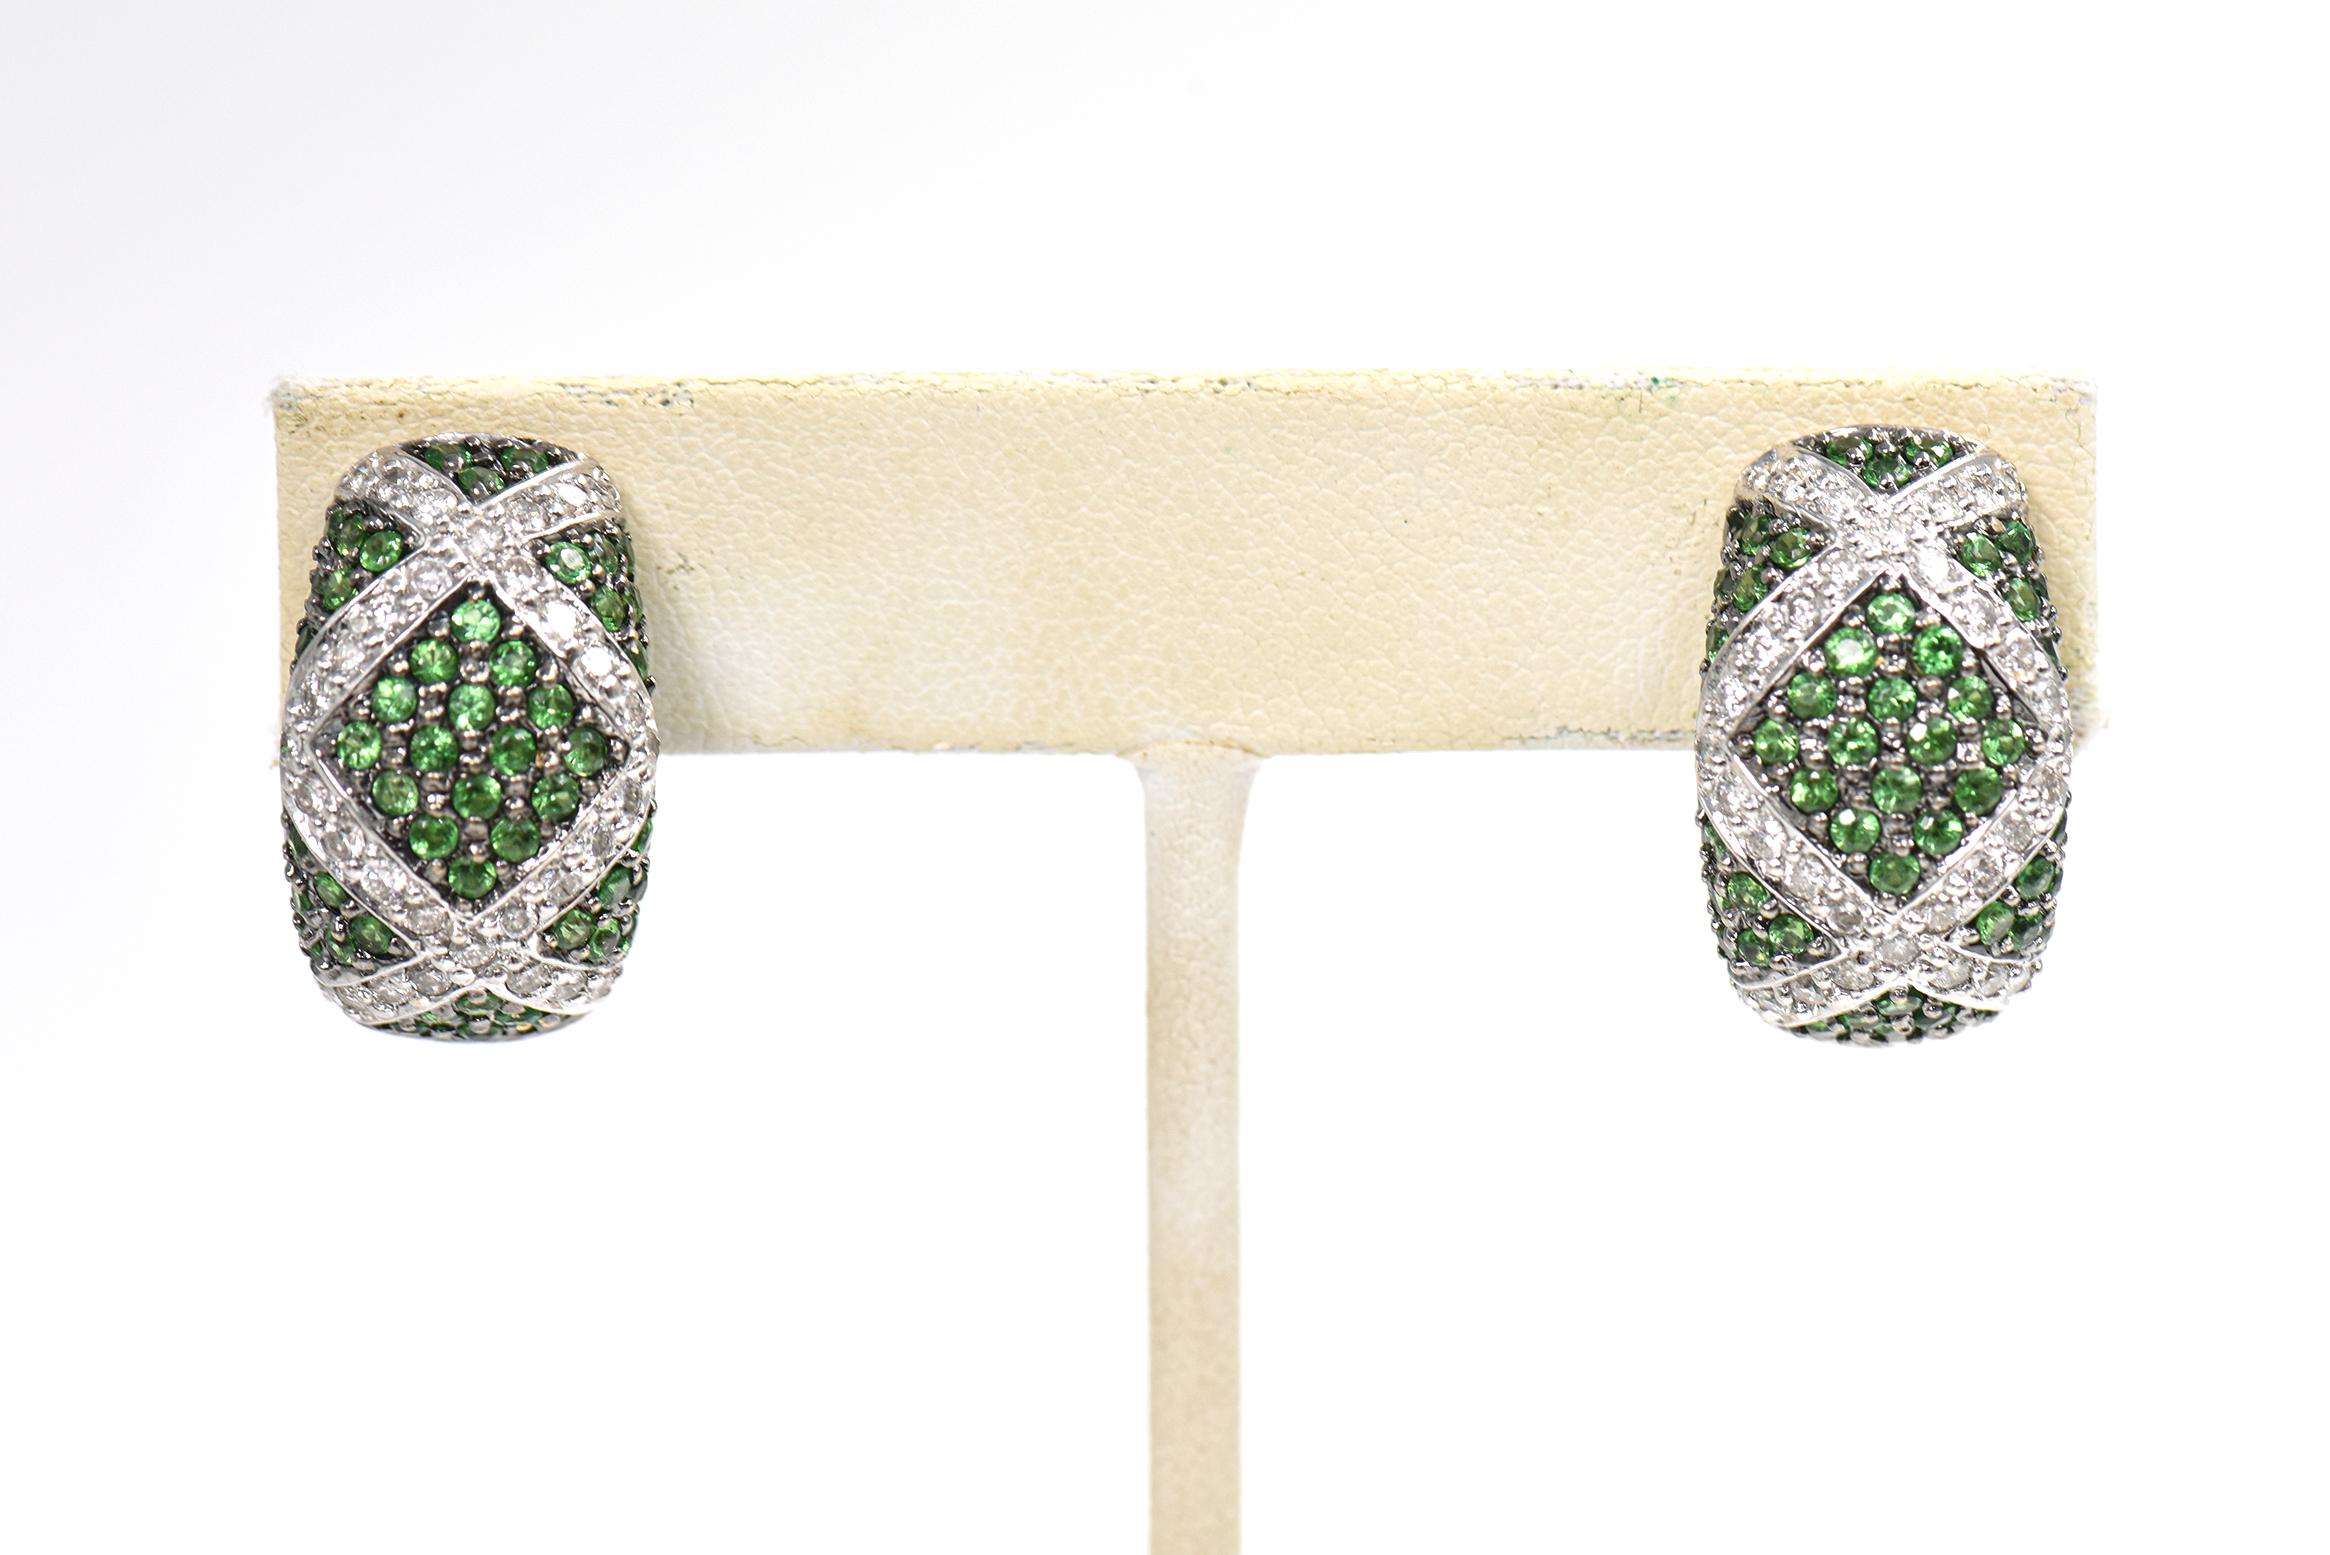 Tsavorite Garnet Diamond Dome Ring and Earrings White Gold Set For Sale 4